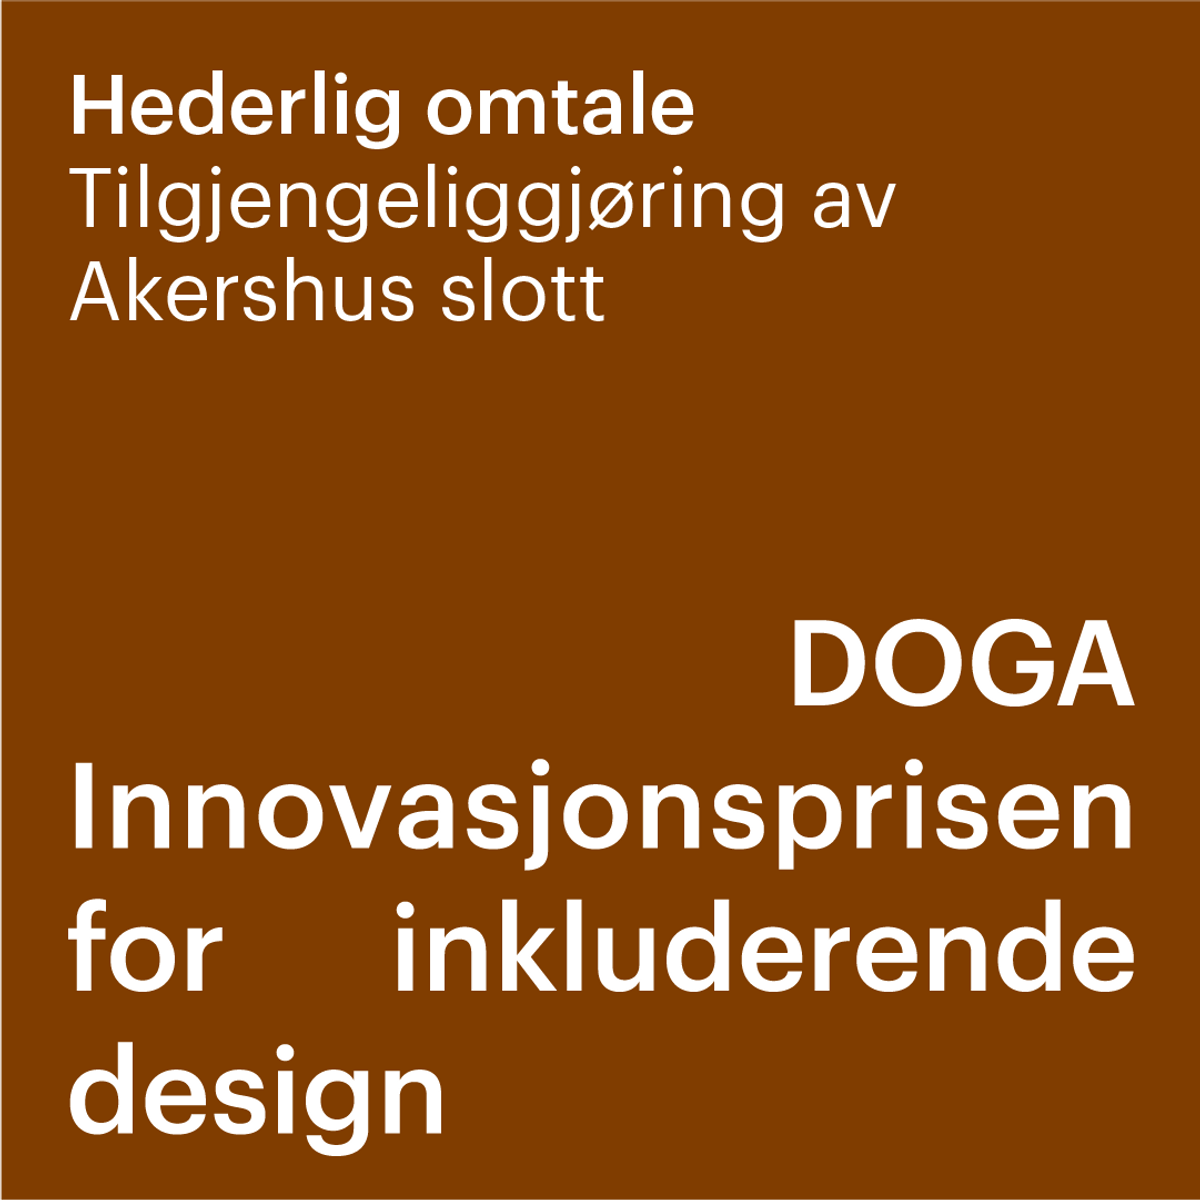 Hederlig omtale i DOGAs innovasjonspris for inkluderende design.